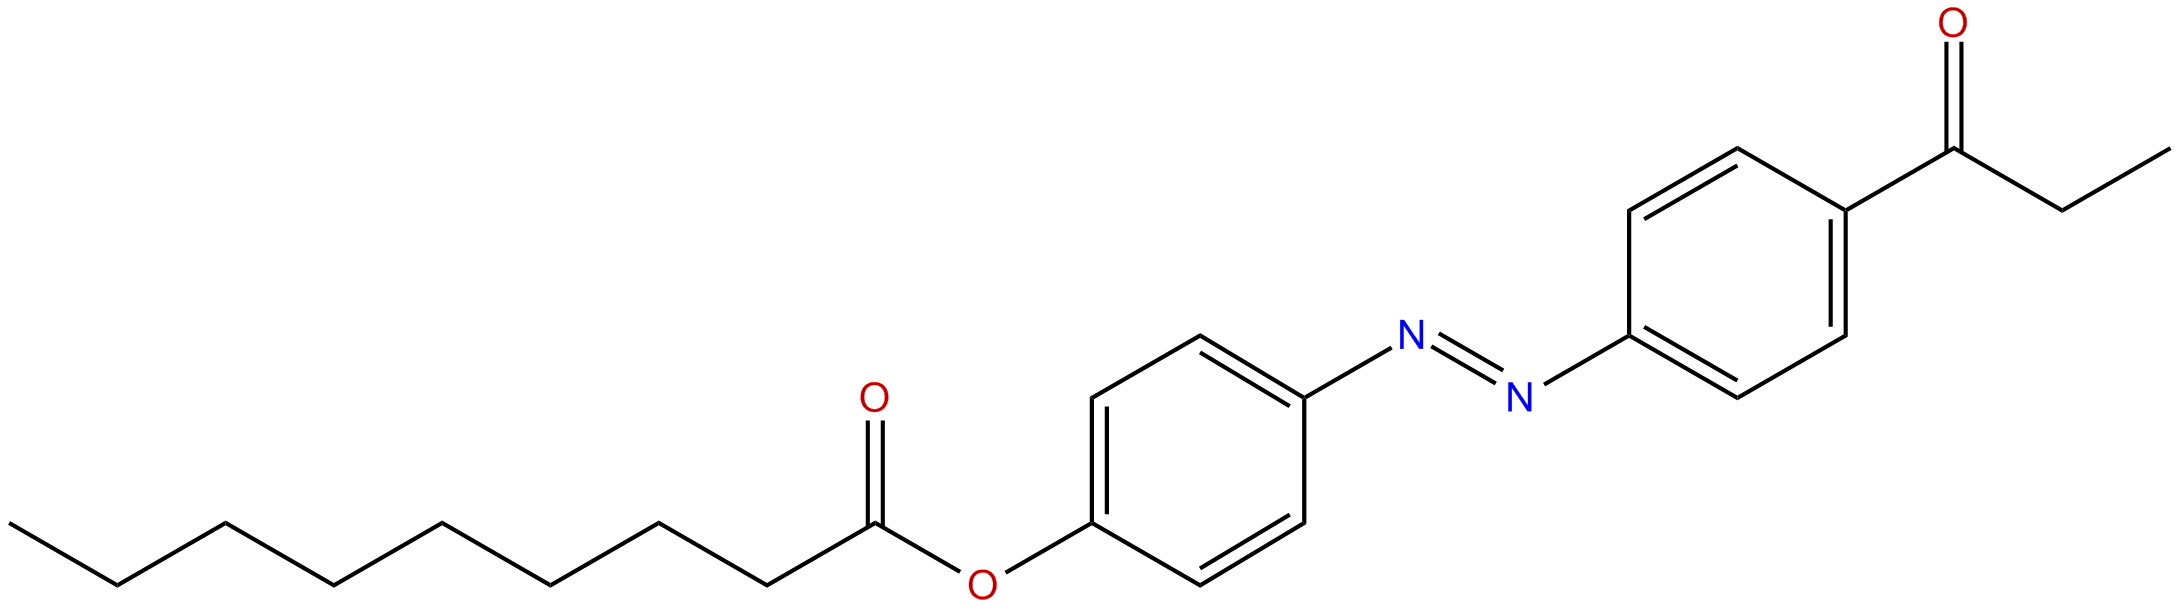 Image of 4-[[4-(1-oxopropyl)phenyl]azo]phenyl nonanoate